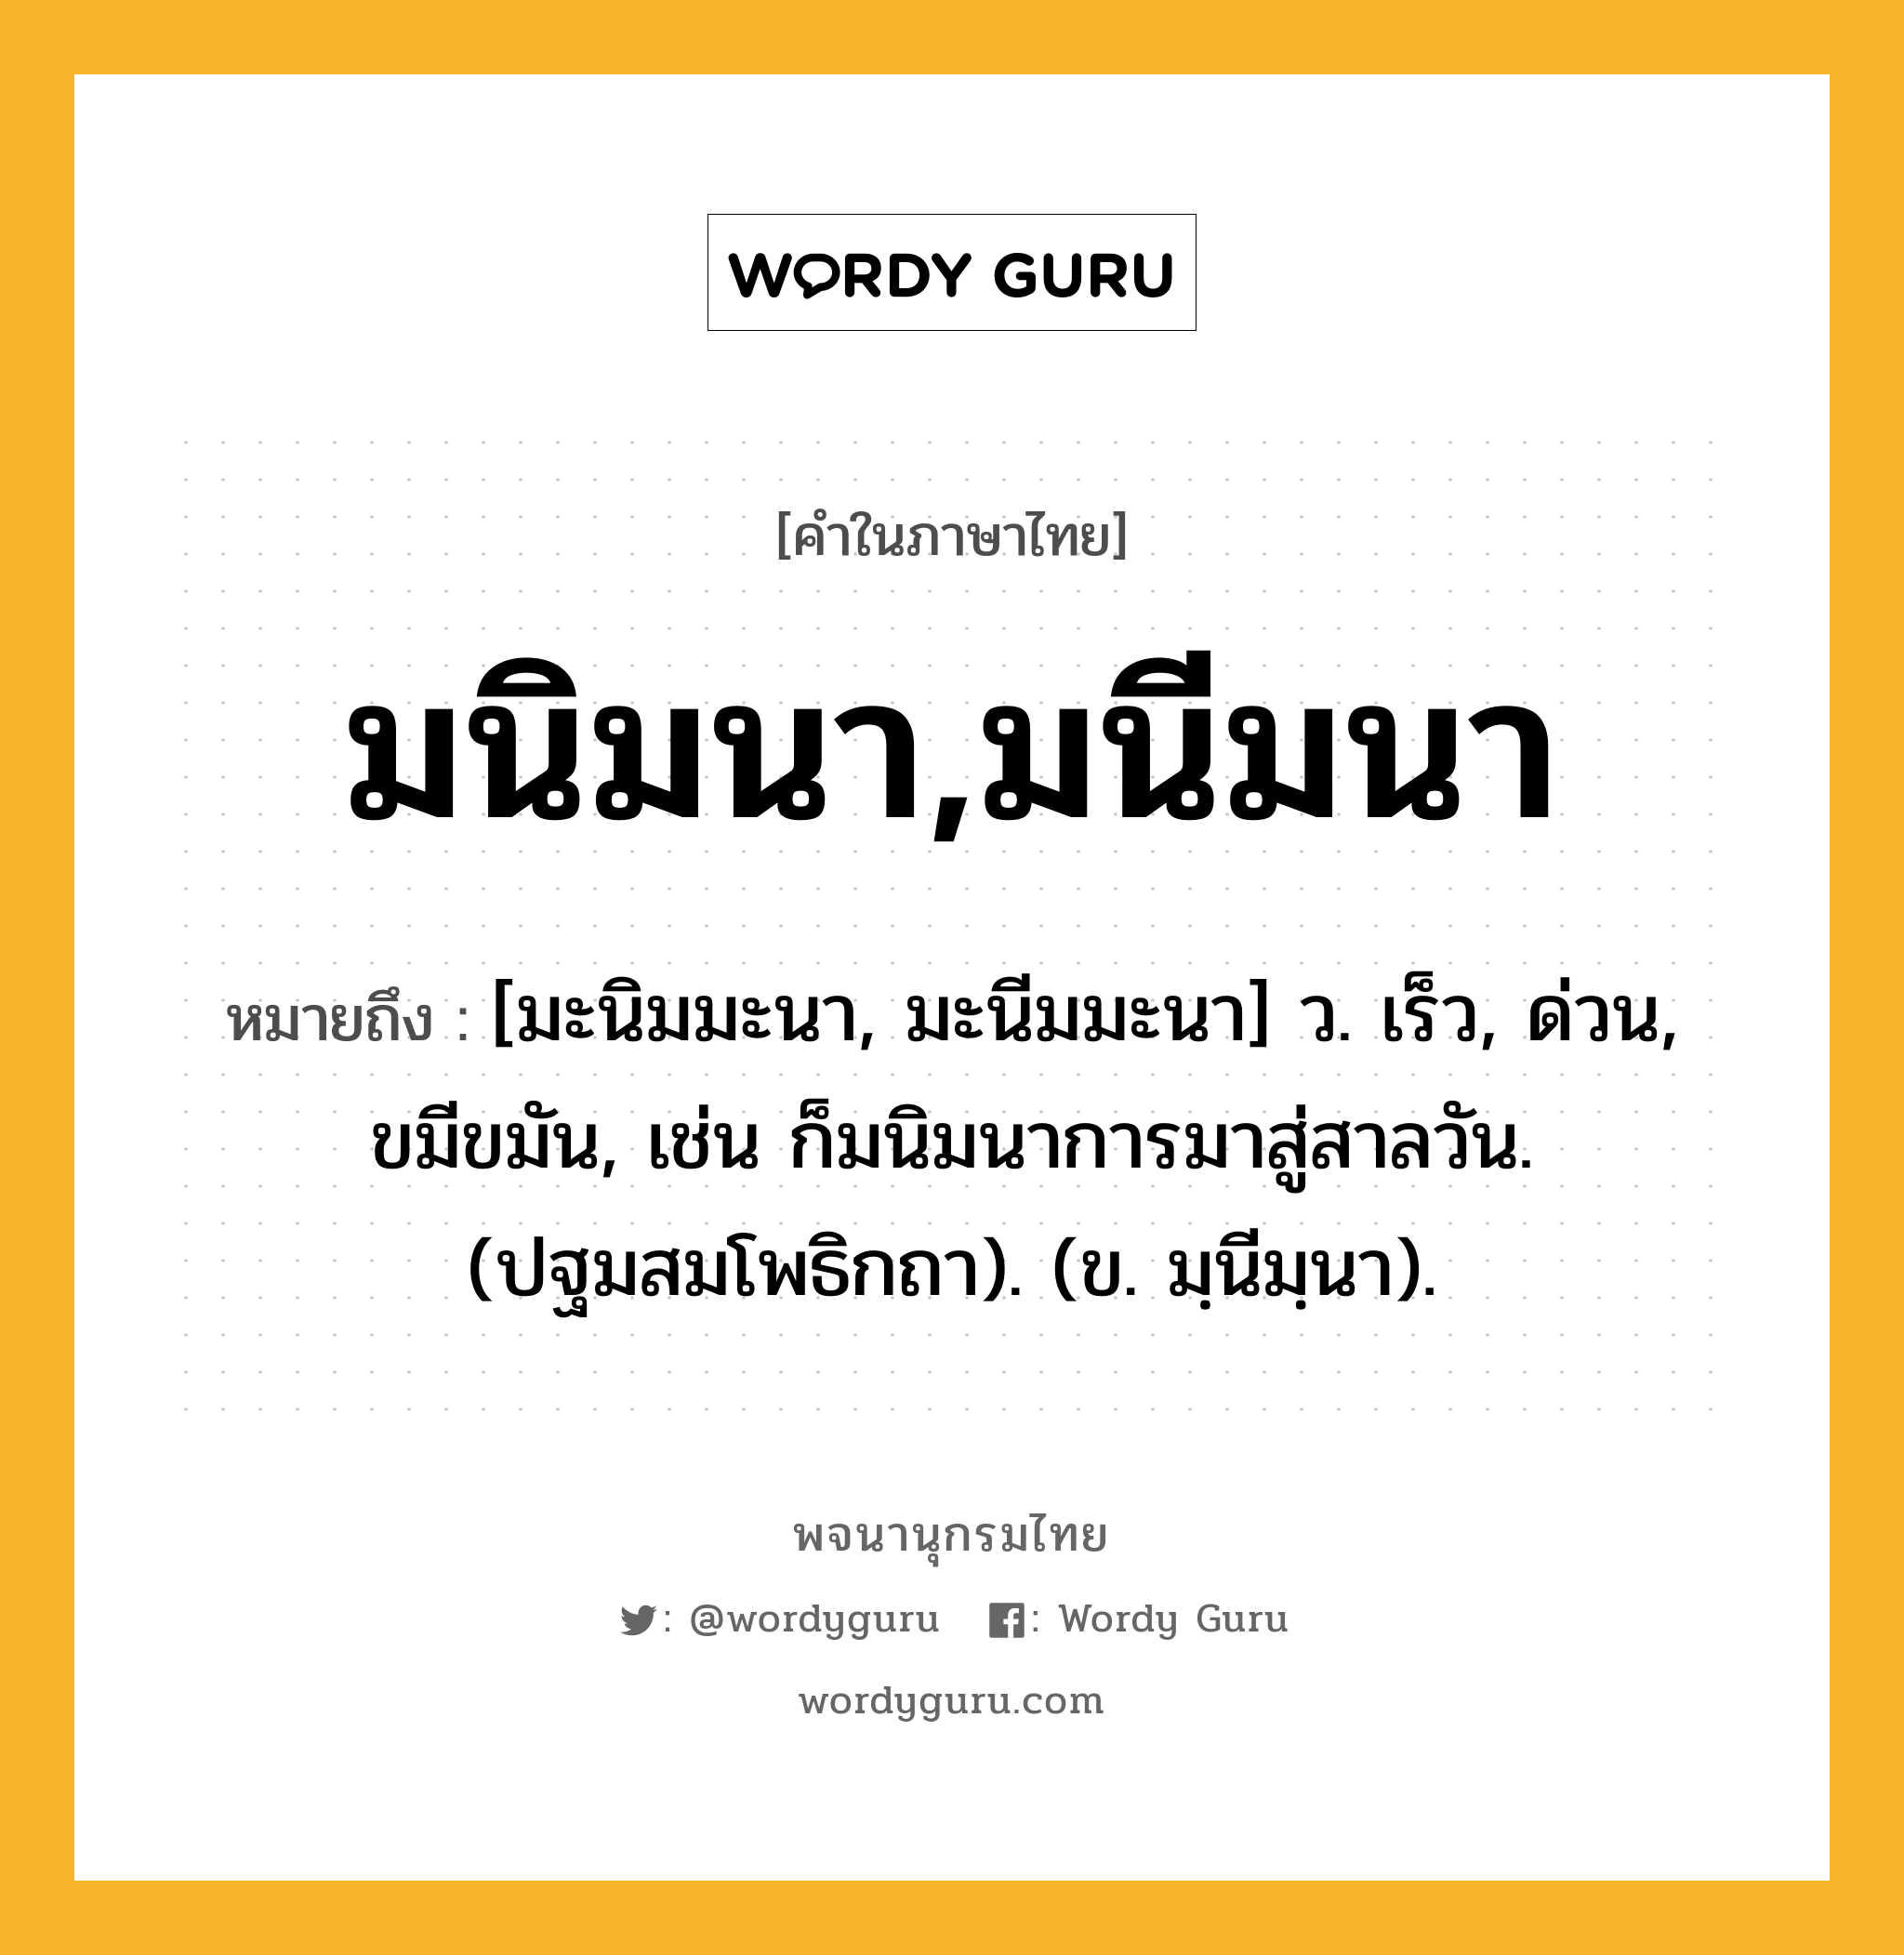 มนิมนา,มนีมนา ความหมาย หมายถึงอะไร?, คำในภาษาไทย มนิมนา,มนีมนา หมายถึง [มะนิมมะนา, มะนีมมะนา] ว. เร็ว, ด่วน, ขมีขมัน, เช่น ก็มนิมนาการมาสู่สาลวัน. (ปฐมสมโพธิกถา). (ข. มฺนีมฺนา).